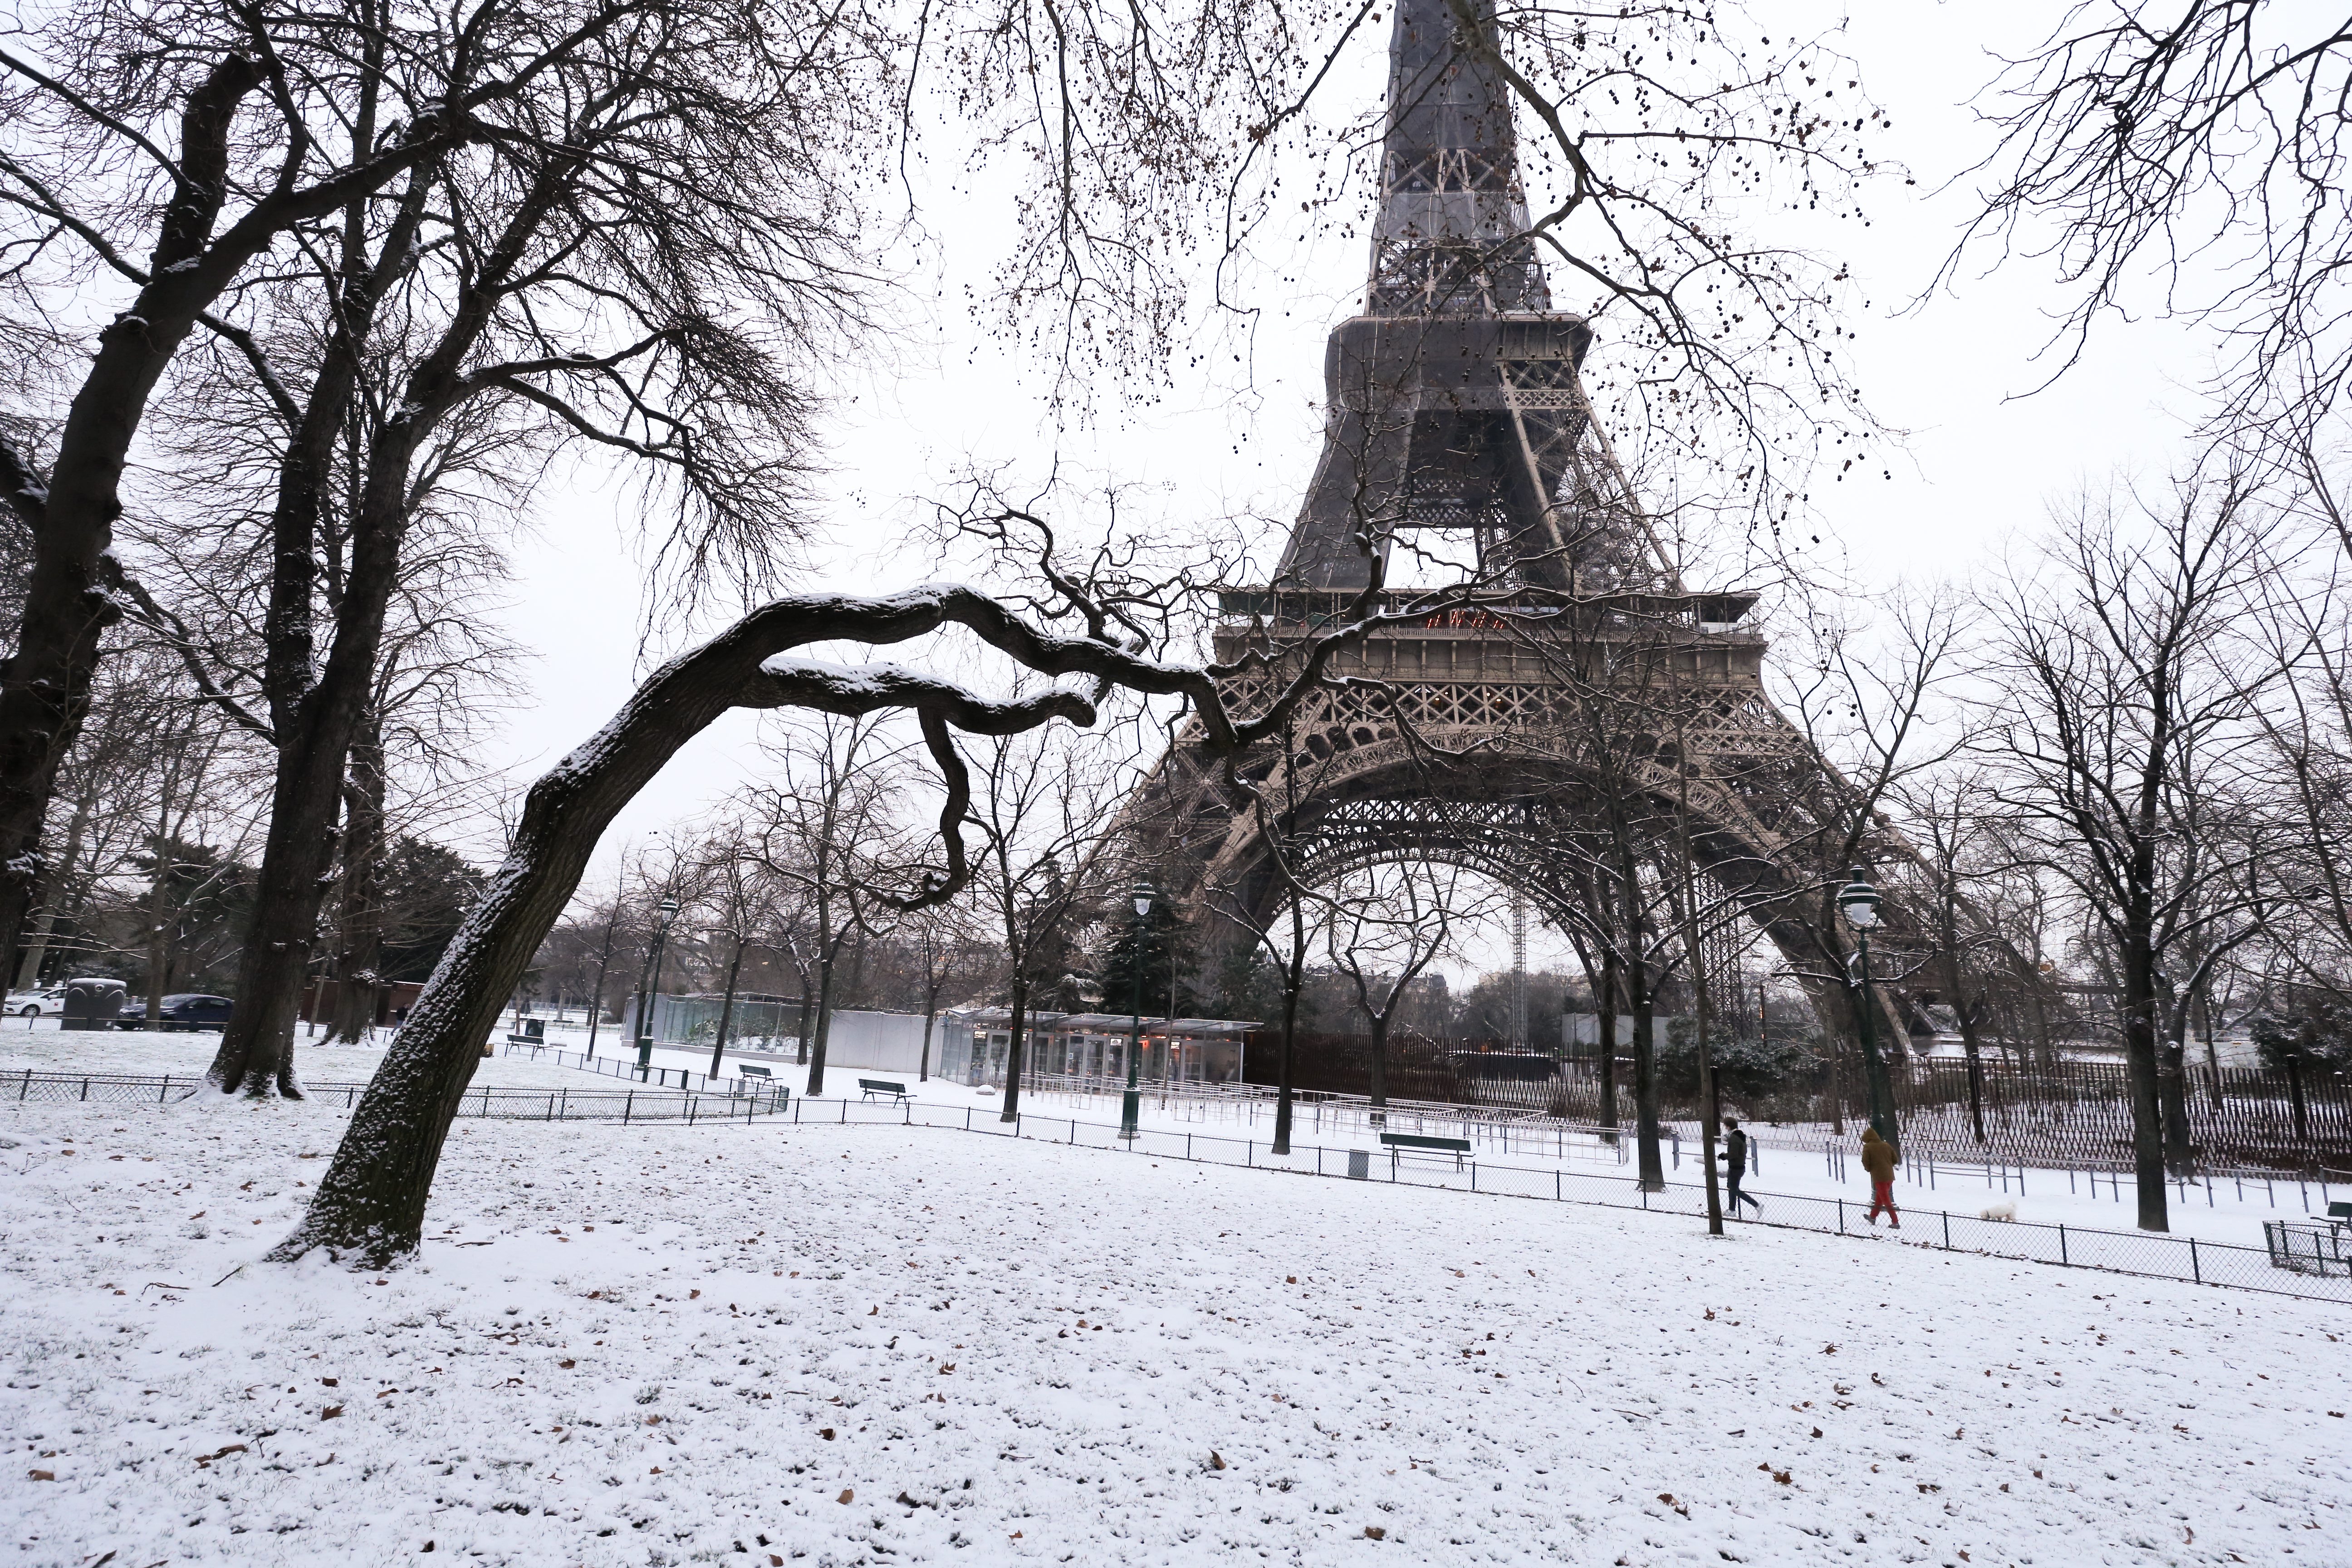 Egész héten zárva volt sztrájk miatt az Eiffel-torony, de vasárnap újranyit